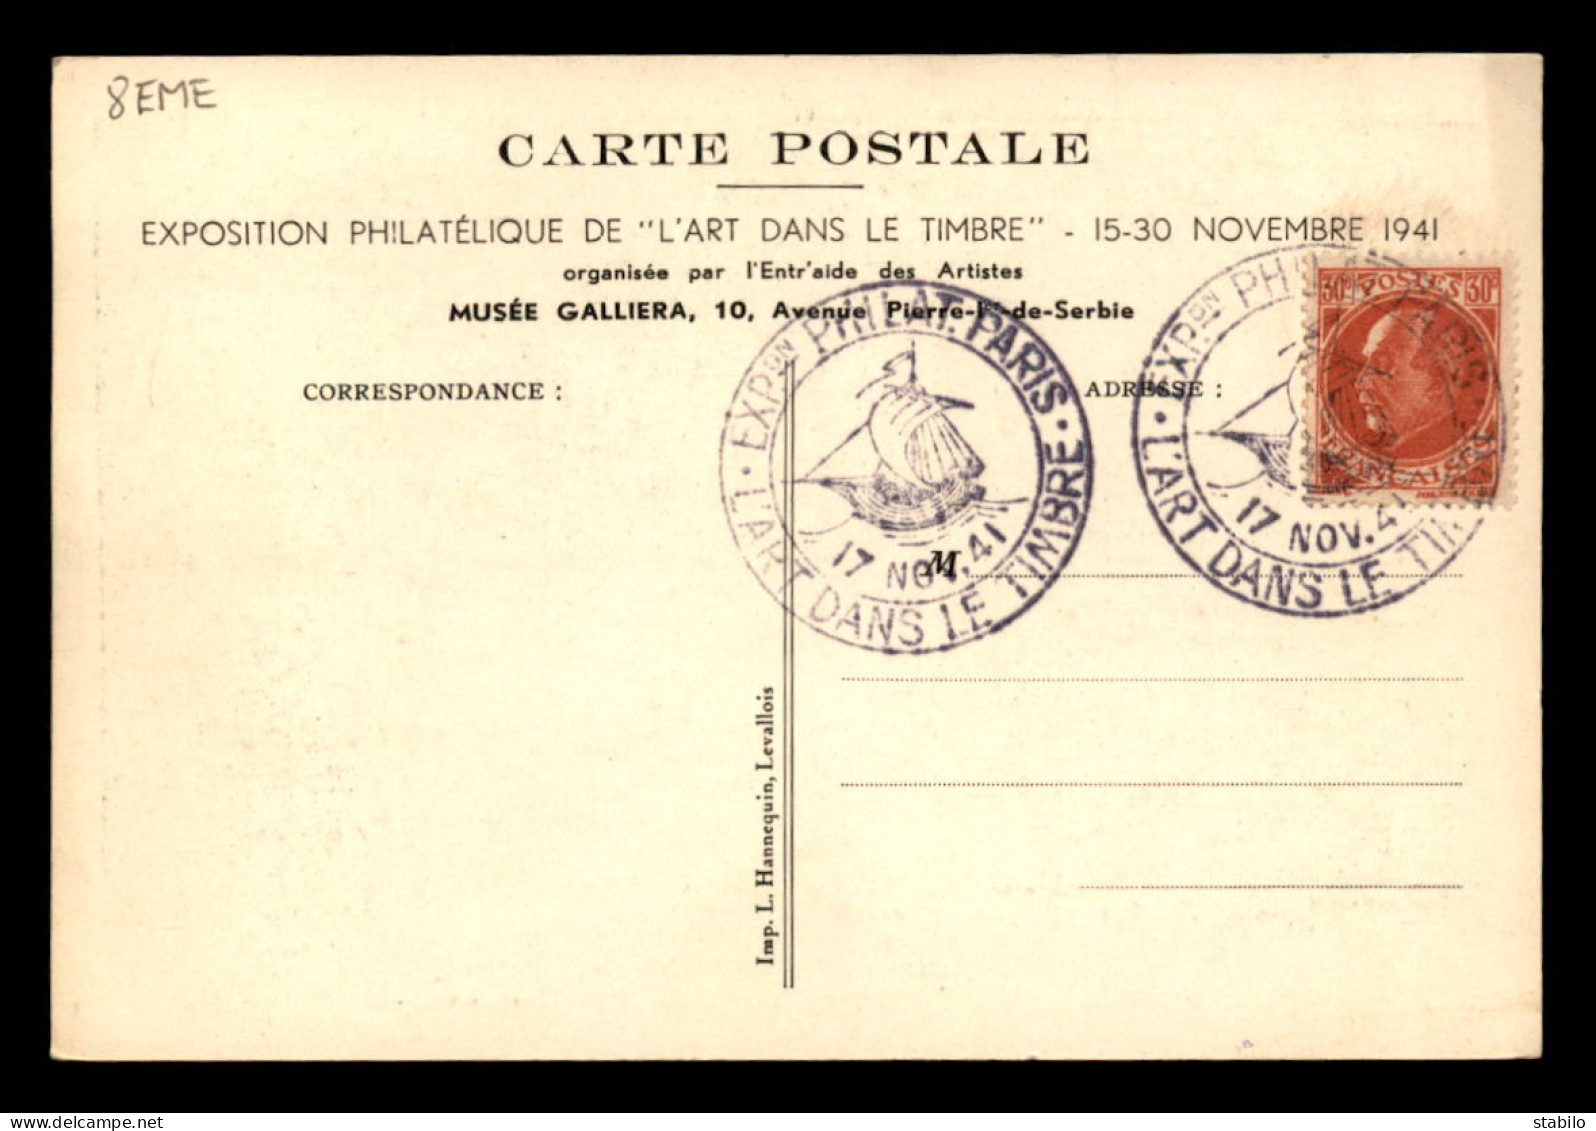 75 - PARIS 8EME - EXPOSITION PHILATELIQUE 15-30 NOVEMBRE 1941 - GRAVURE SUR BOIS D'EMILE BOIZOT, DESSIN DE P.E. LECOMTE - District 08